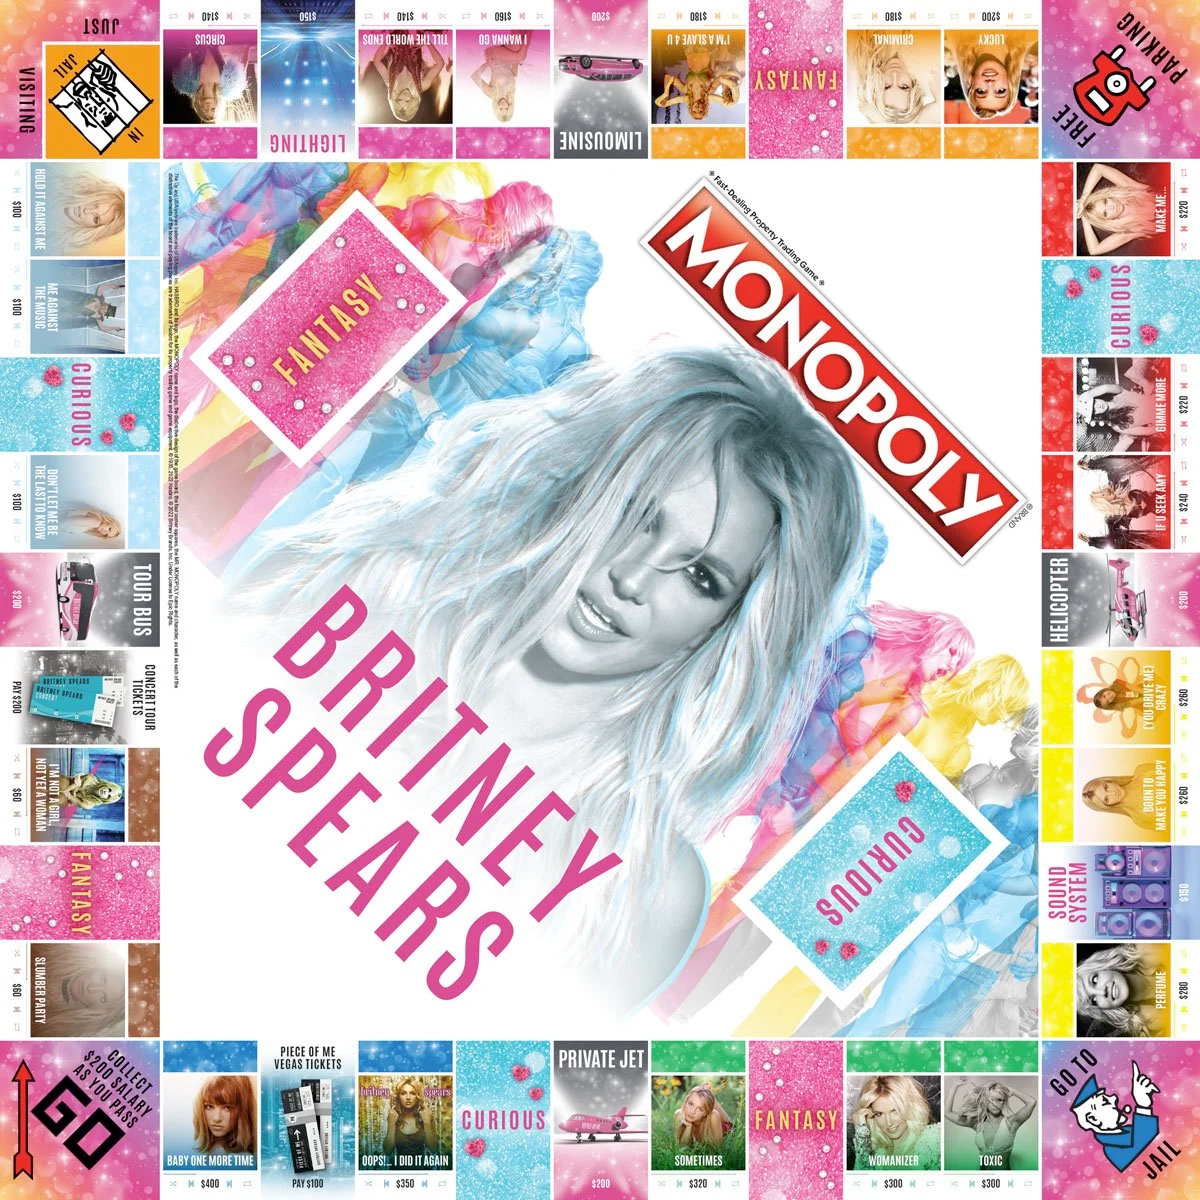 Jogo Monopoly Britney Spears, a Princesa do Pop